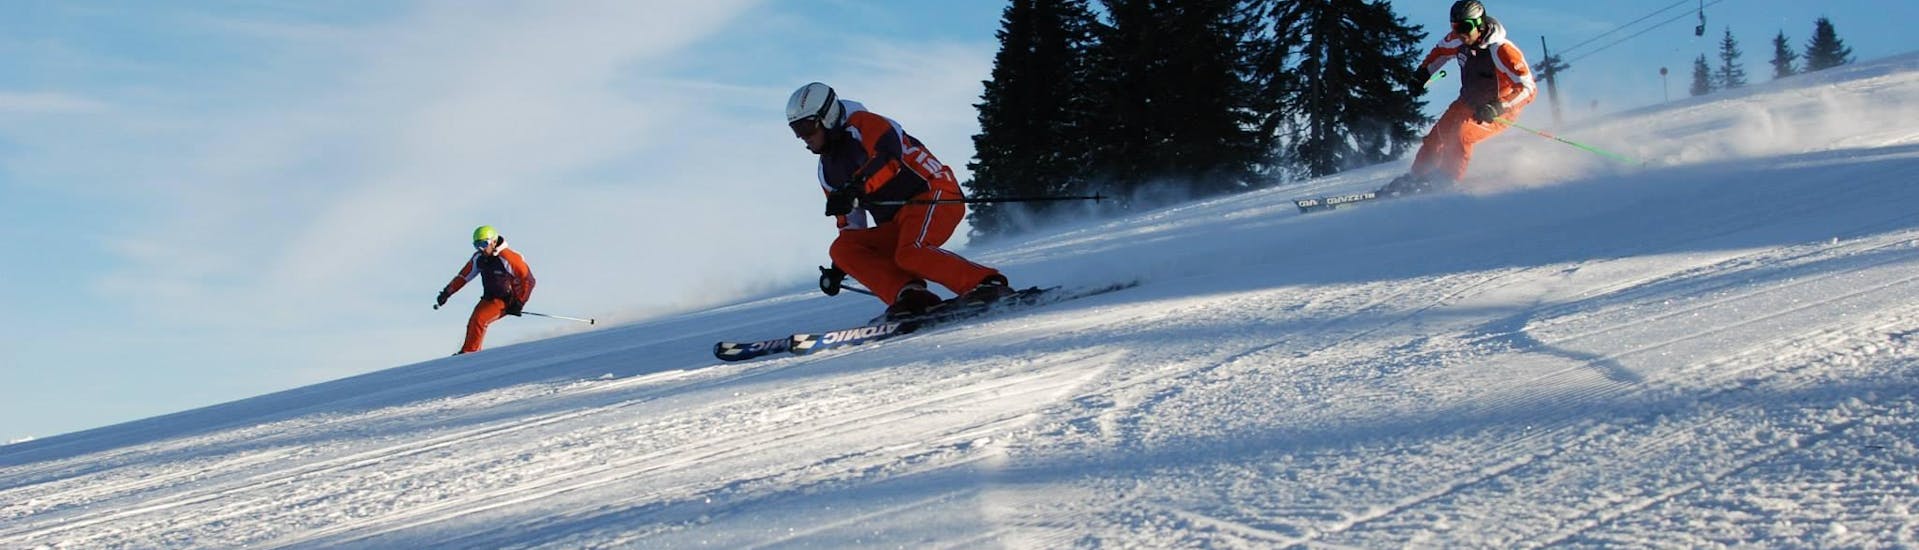 Skikurs für Erwachsene + Skiverleih Package für alle Levels mit Skischule Toni Gruber.